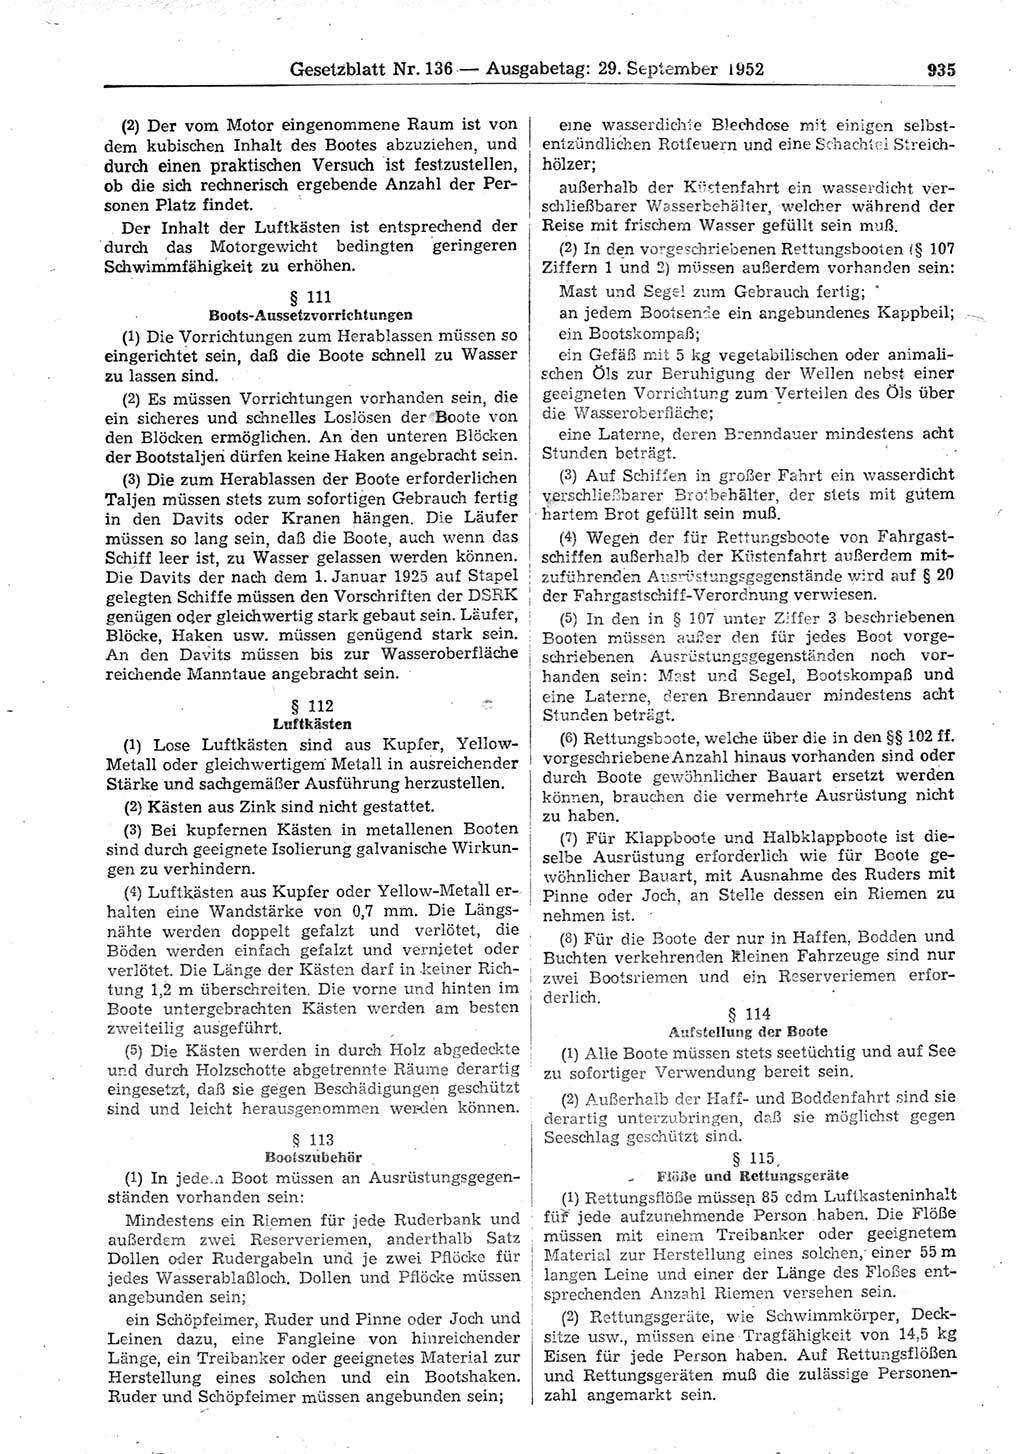 Gesetzblatt (GBl.) der Deutschen Demokratischen Republik (DDR) 1952, Seite 935 (GBl. DDR 1952, S. 935)